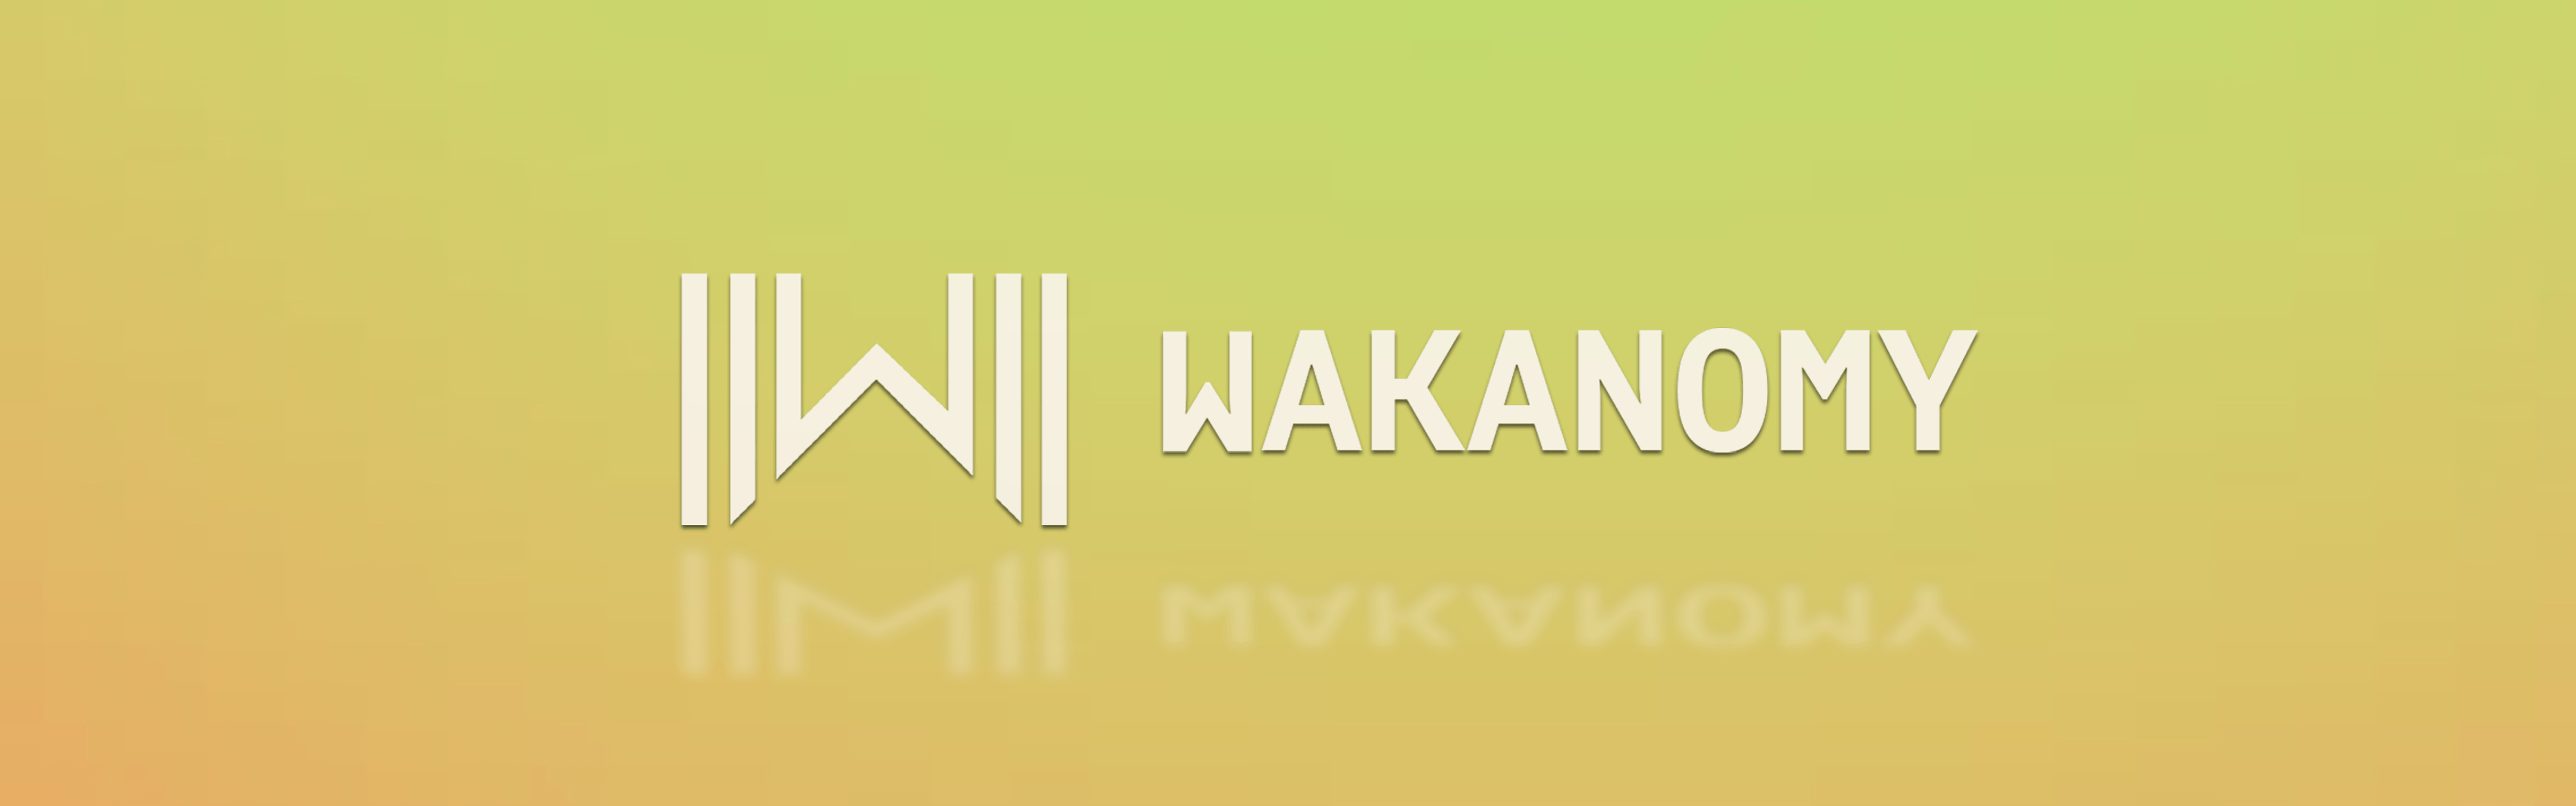 Wakanomy banner